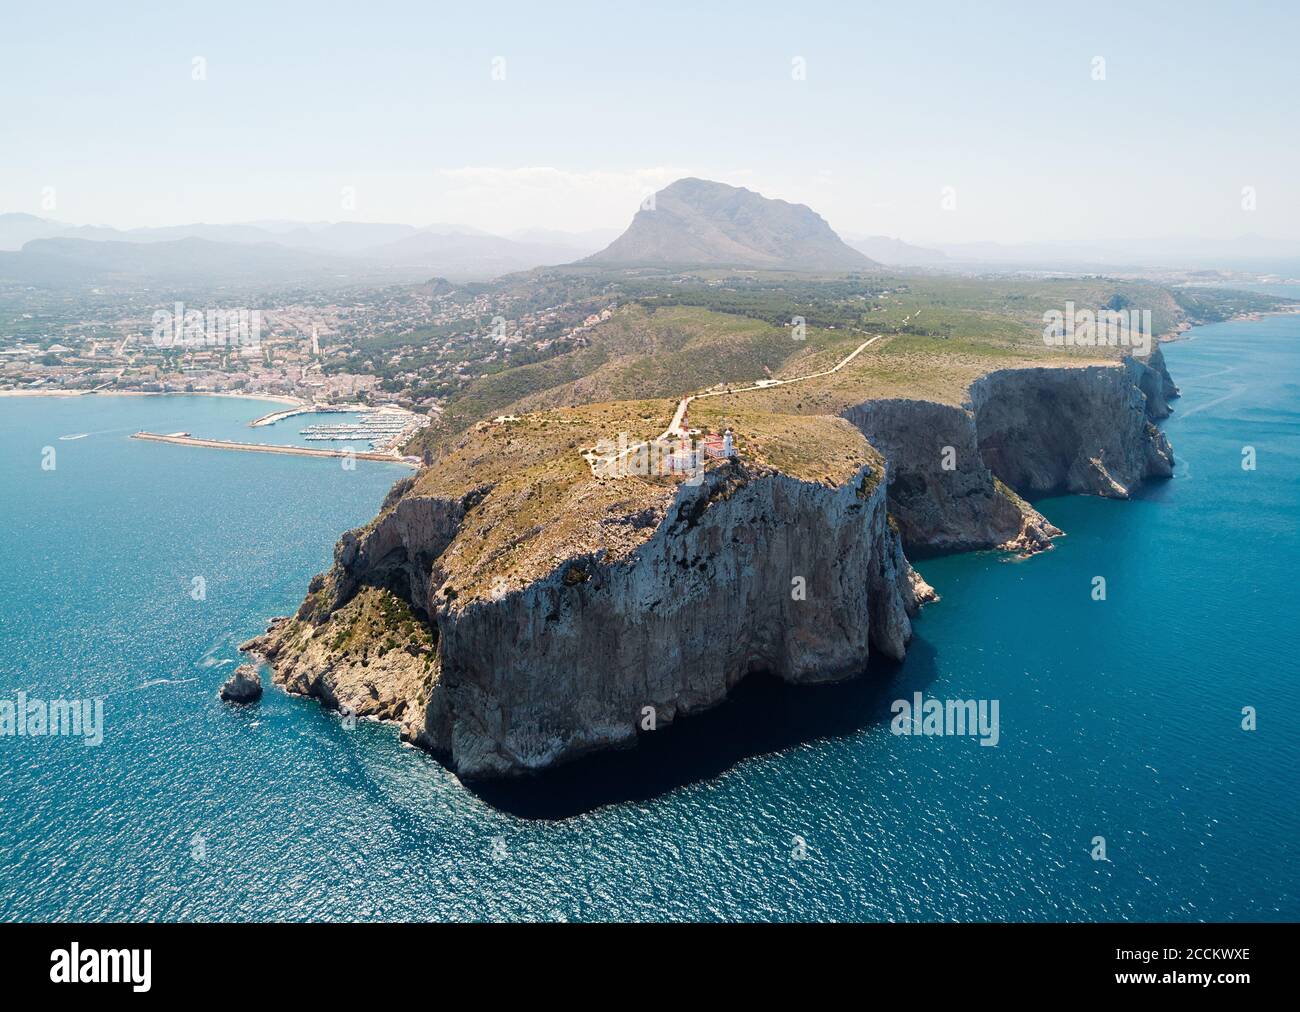 Vue aérienne photographie ville côtière de Javea avec des montagnes vertes rocheuses, baie turquoise Méditerranée navires amarrés dans le port, comarca de Marina Banque D'Images